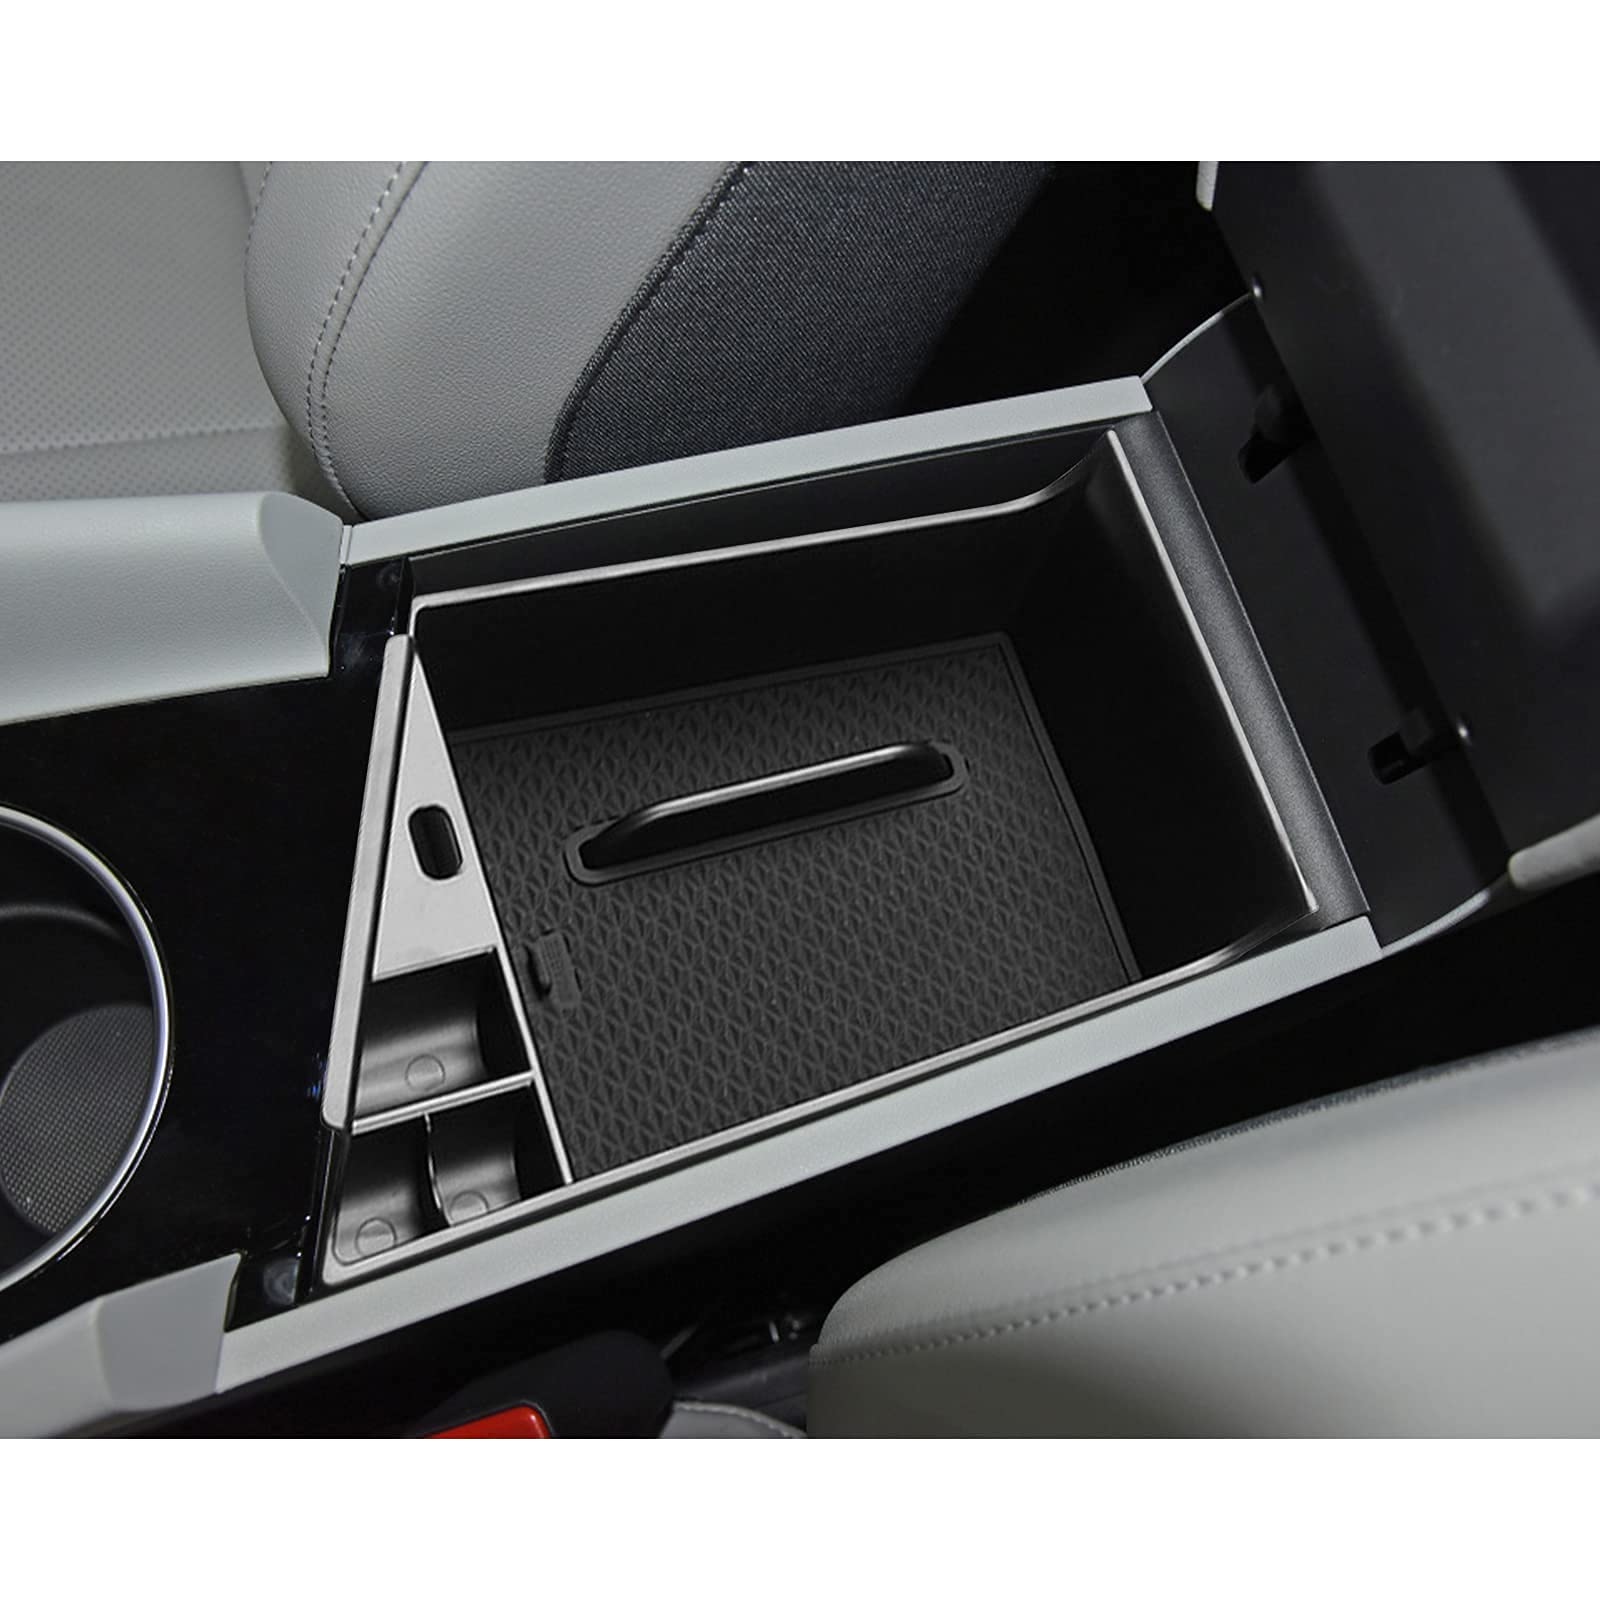 Hyundai Elantra Limited Hybrid Center Organizer Storage Tray 2021+ - LFOTPP Car Accessories